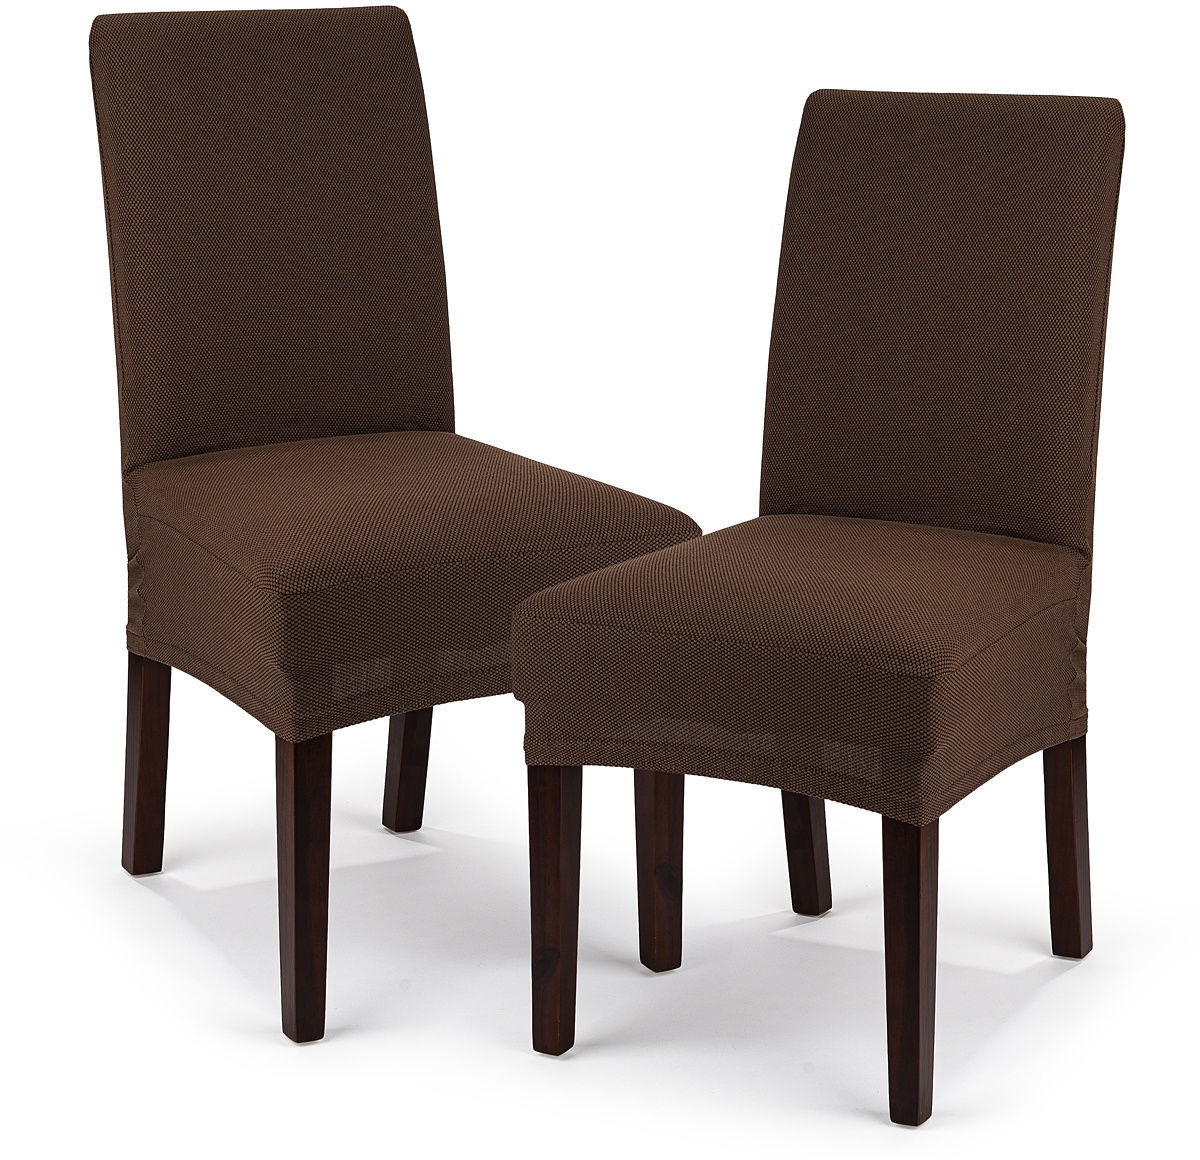 4Home Multielastyczny pokrowiec na krzesło Comfort, brązowy, 40 - 50 cm, zestaw 2 szt.